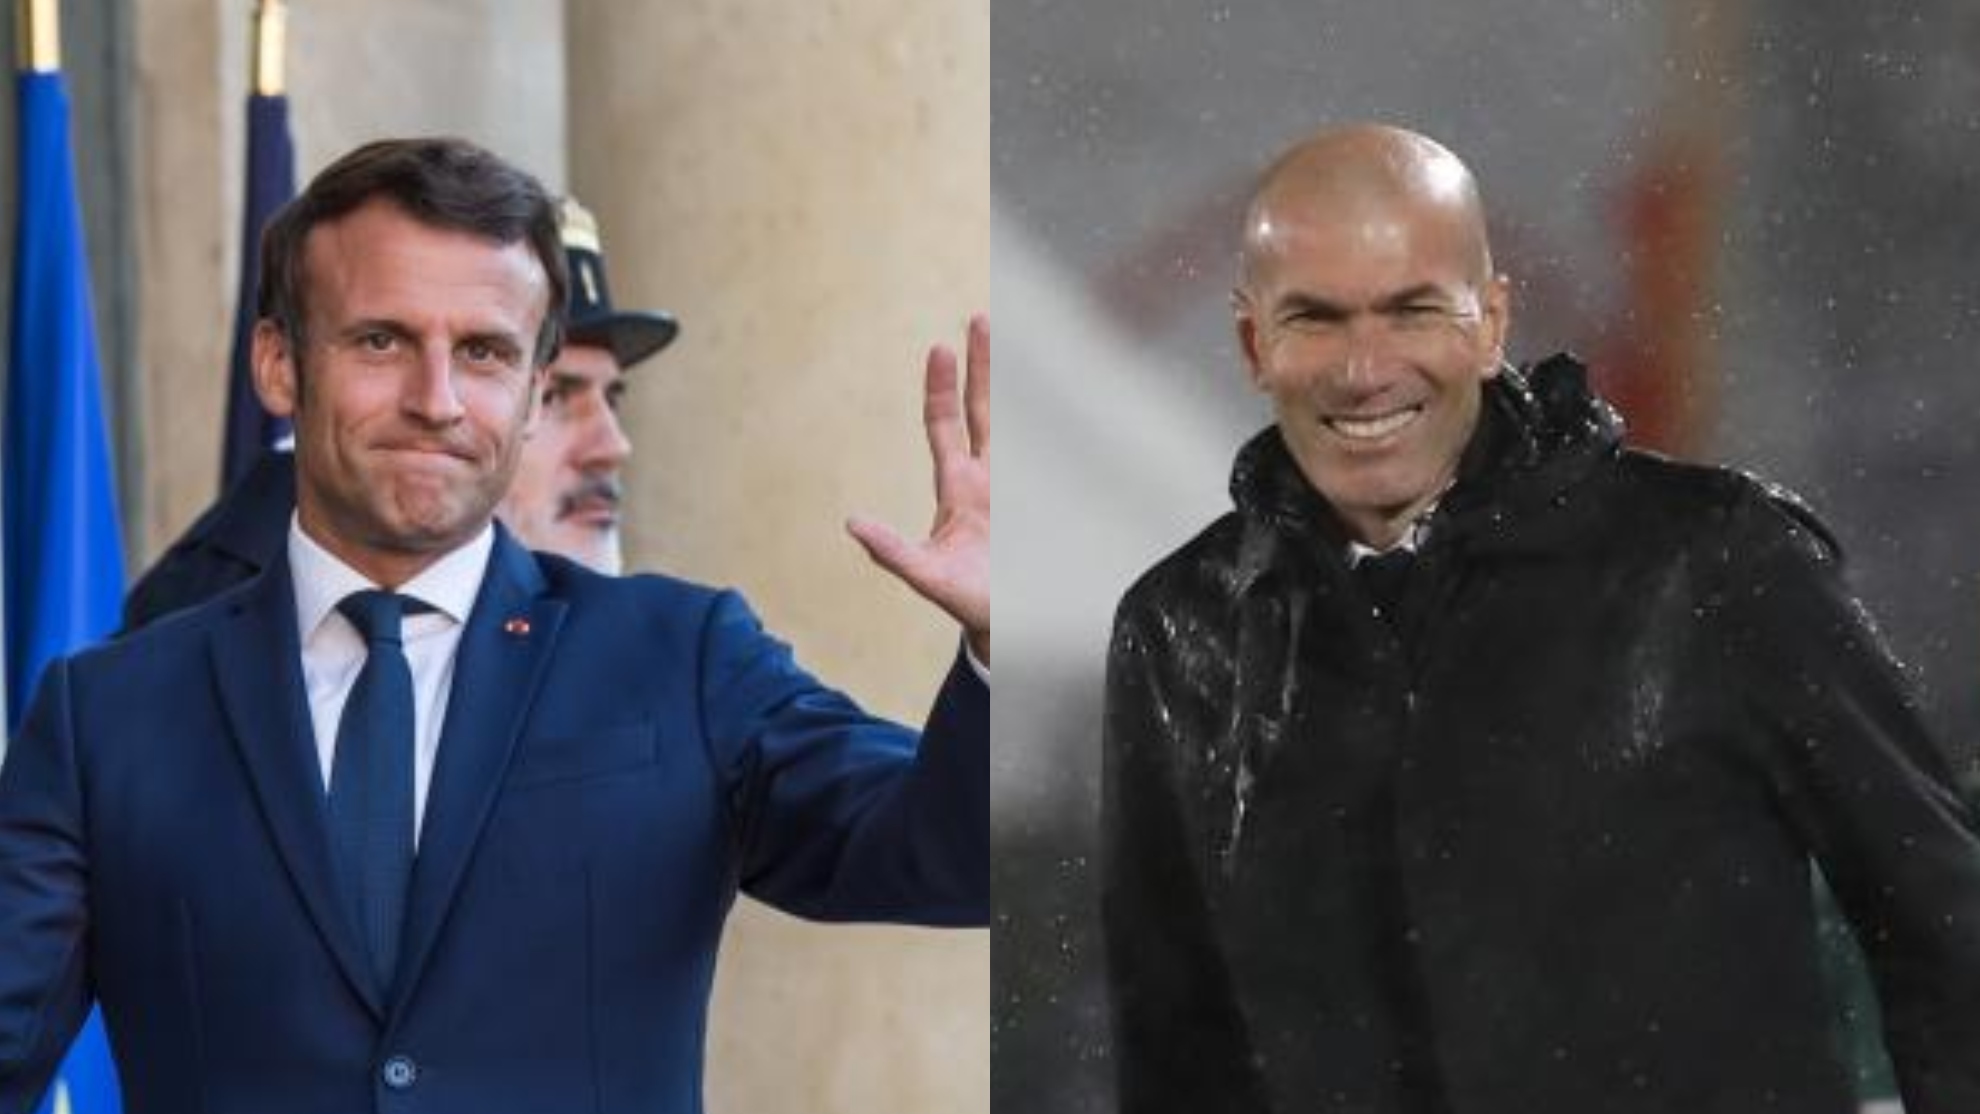 Macron: I want Zidane to coach PSG and promote France